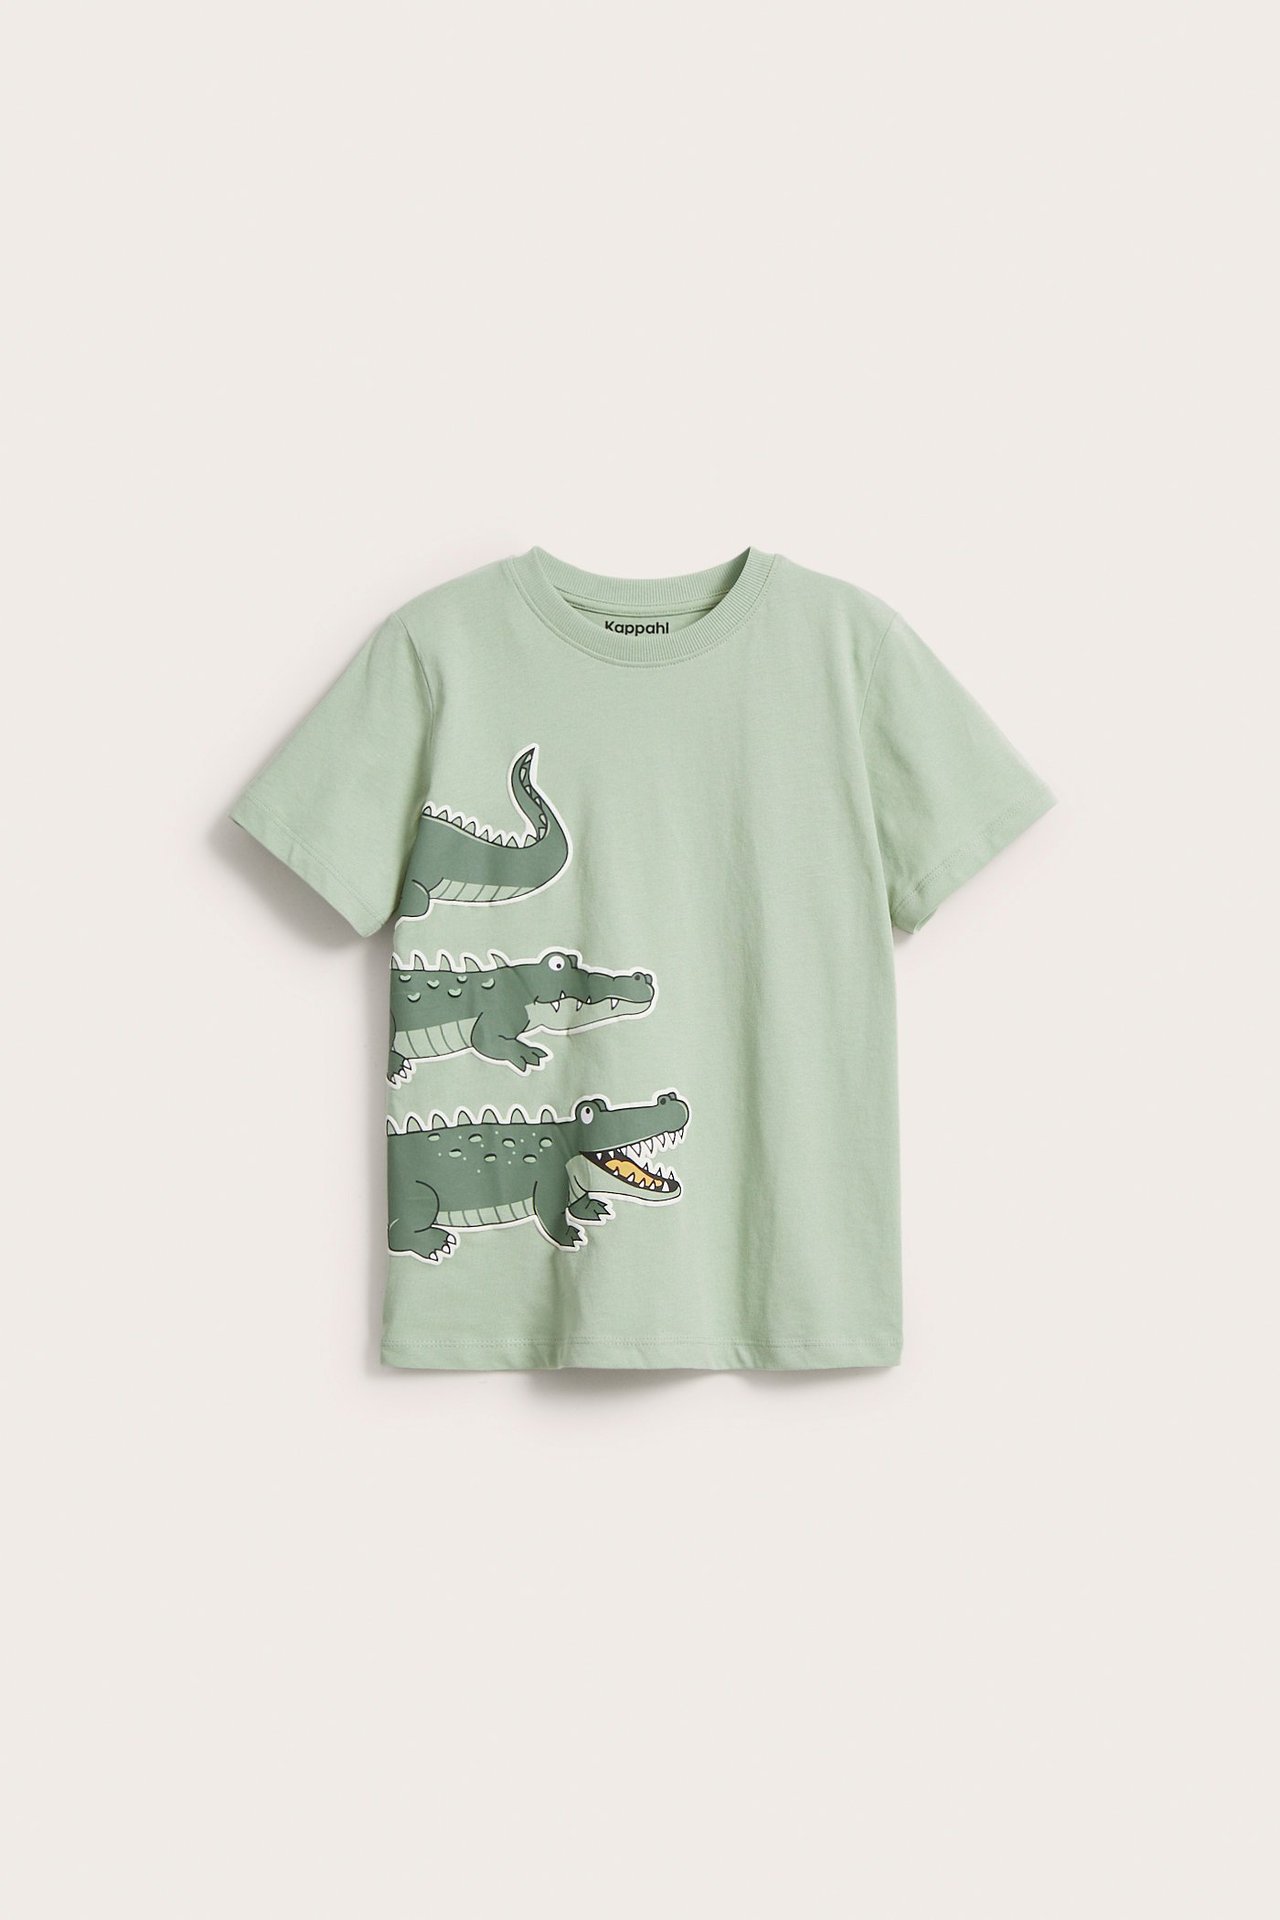 T-paita, jossa on krokotiiliteema